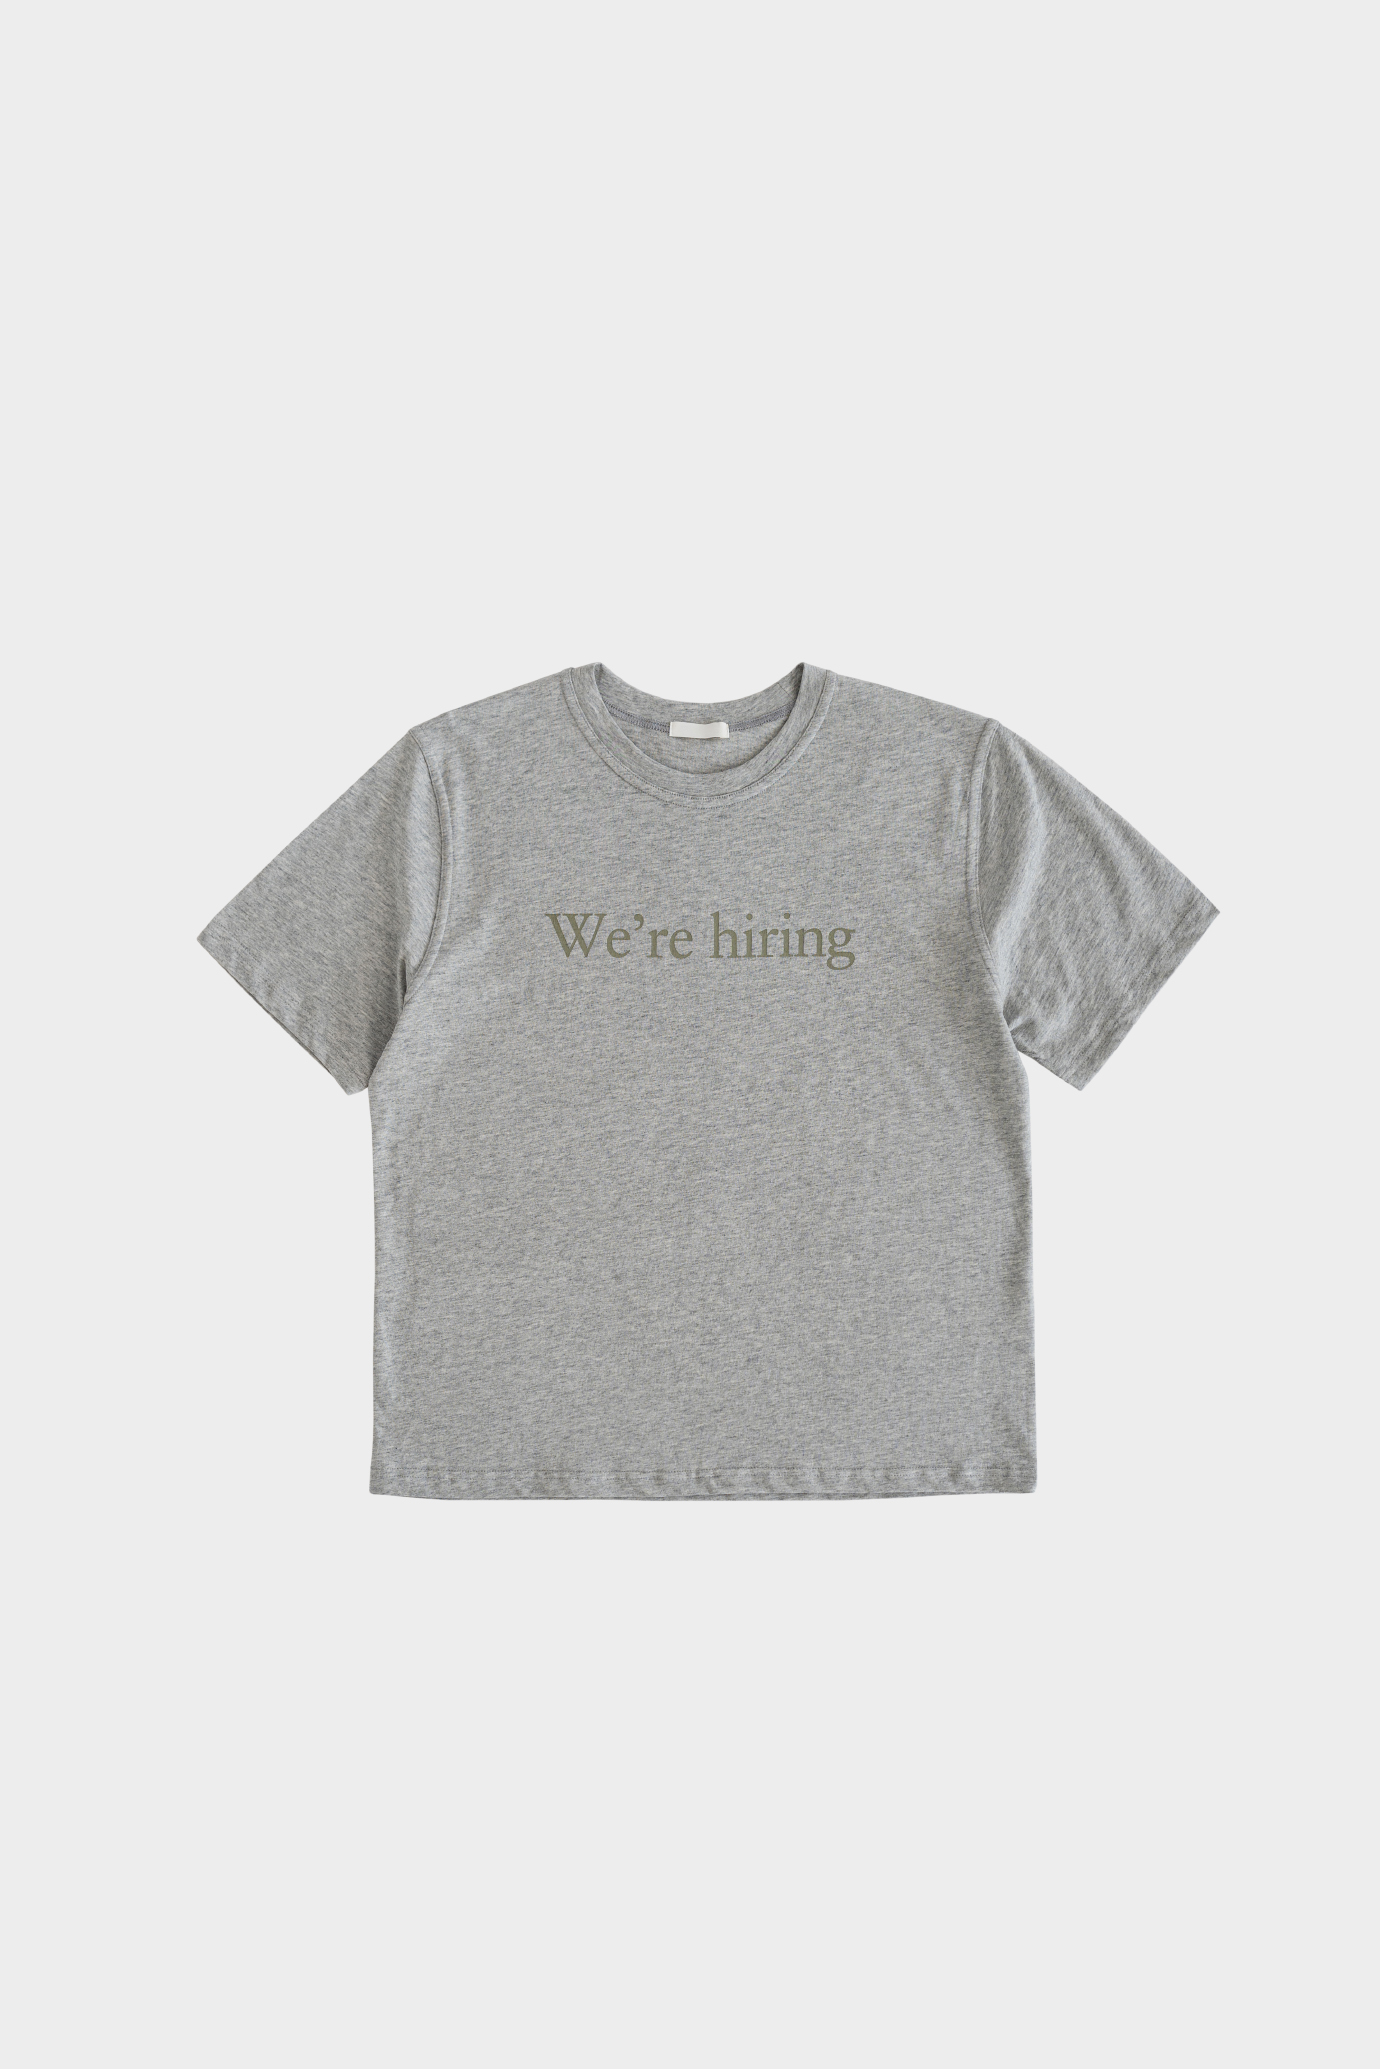 18008_Healing T Shirt